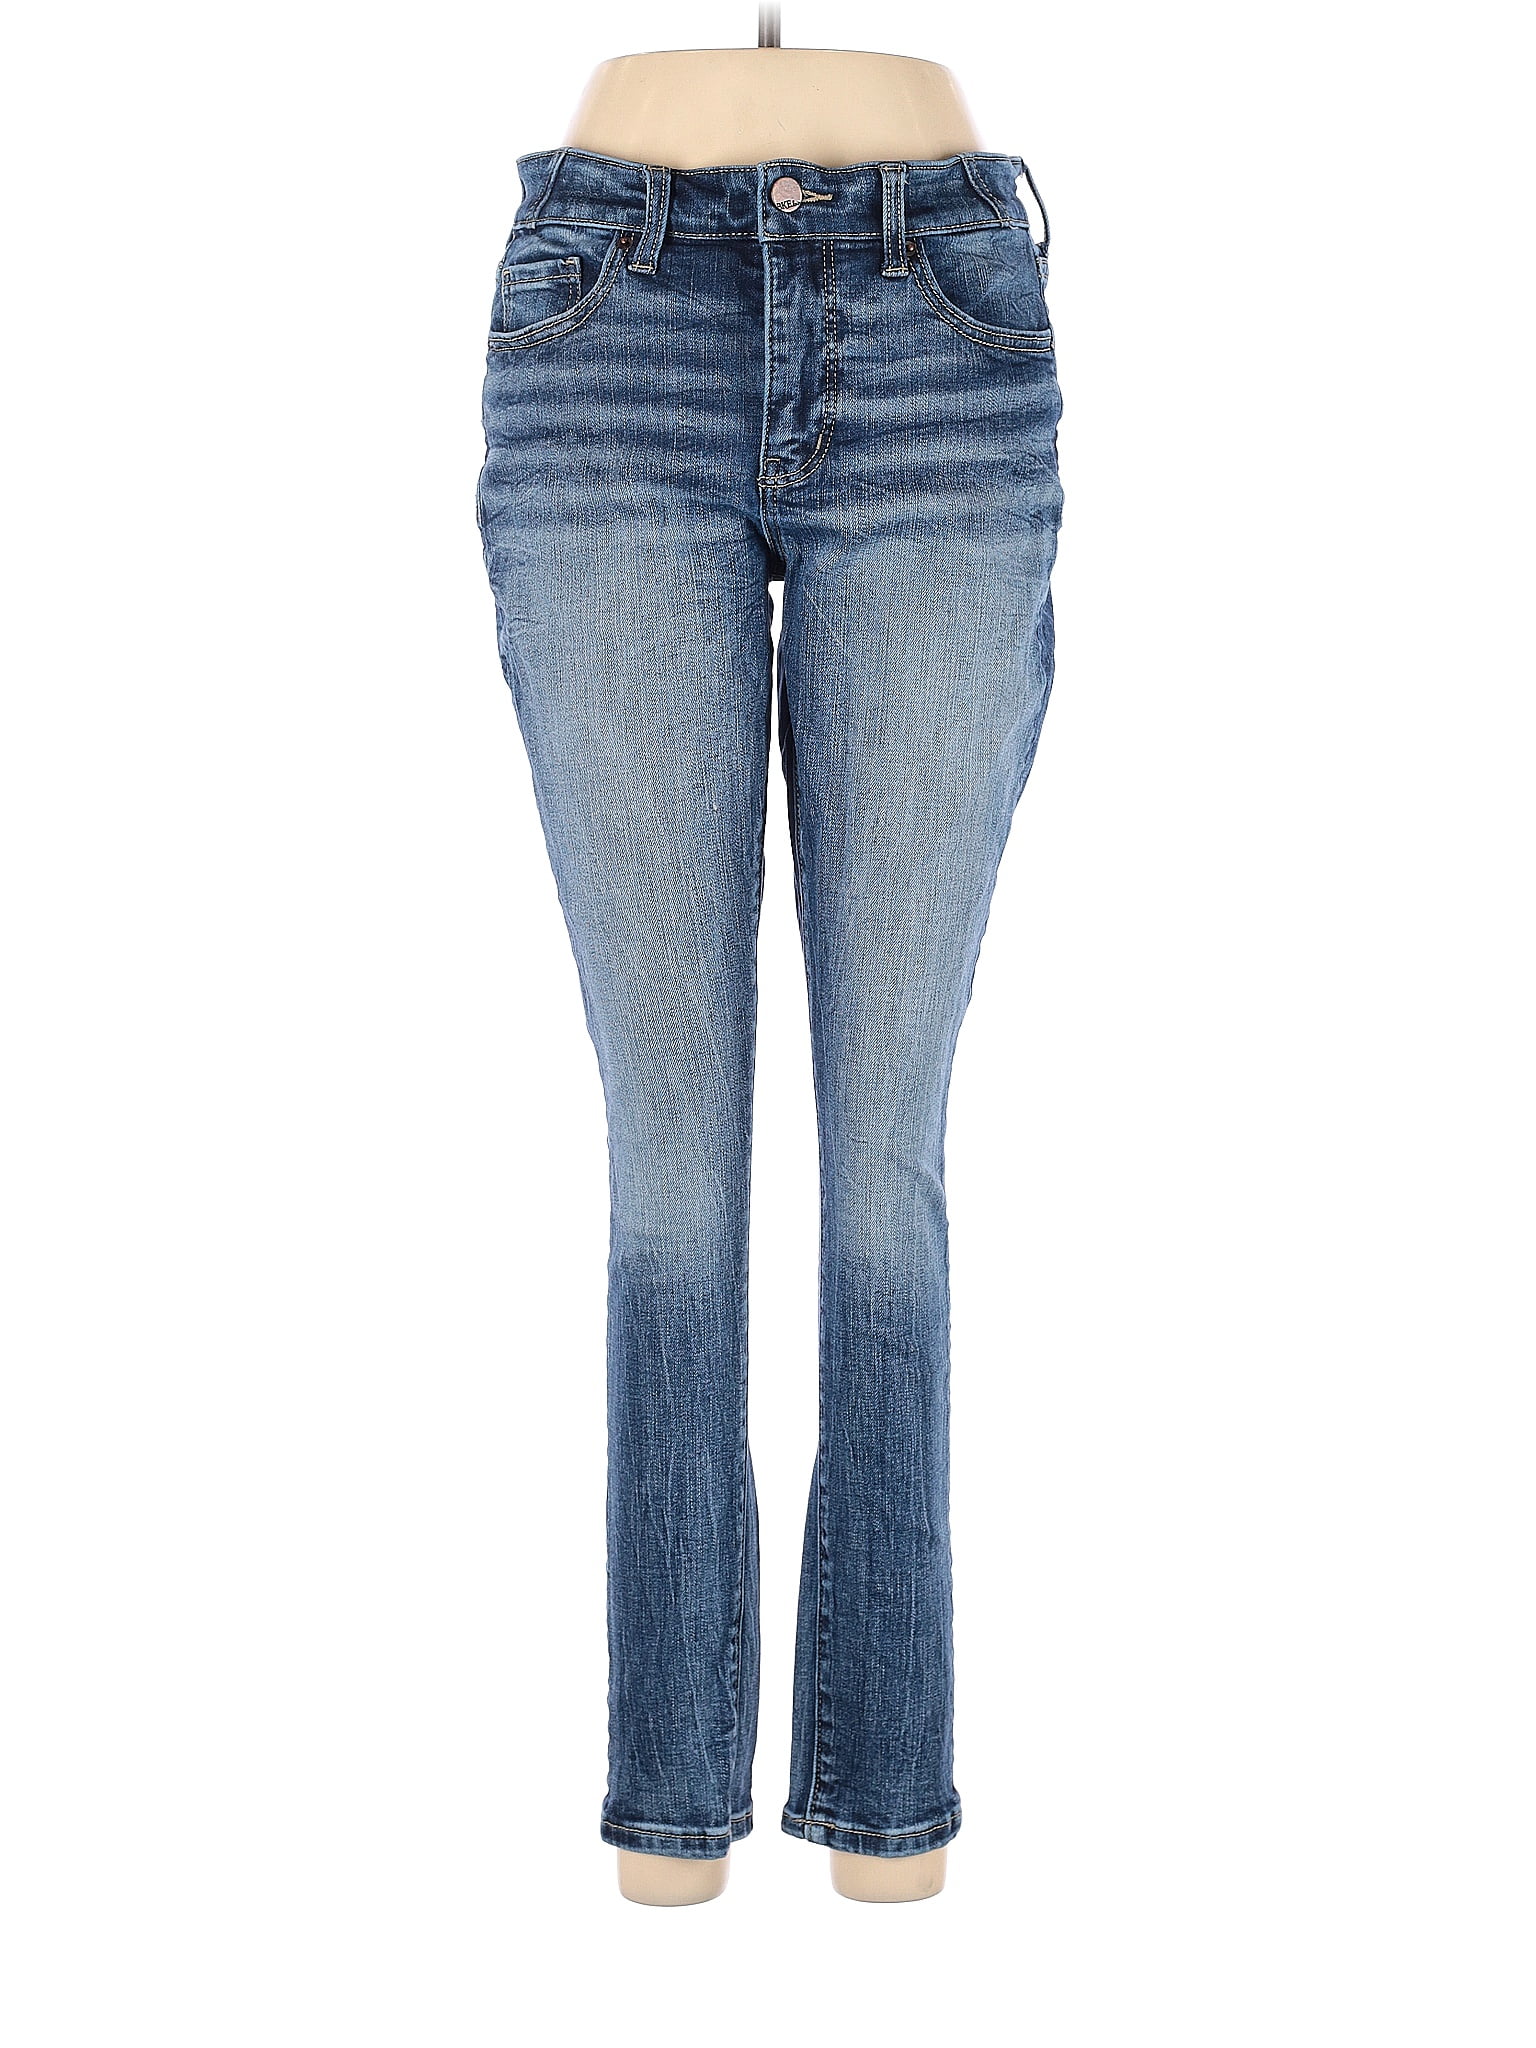 BKE Solid Blue Jeans 26 Waist - 73% off | thredUP